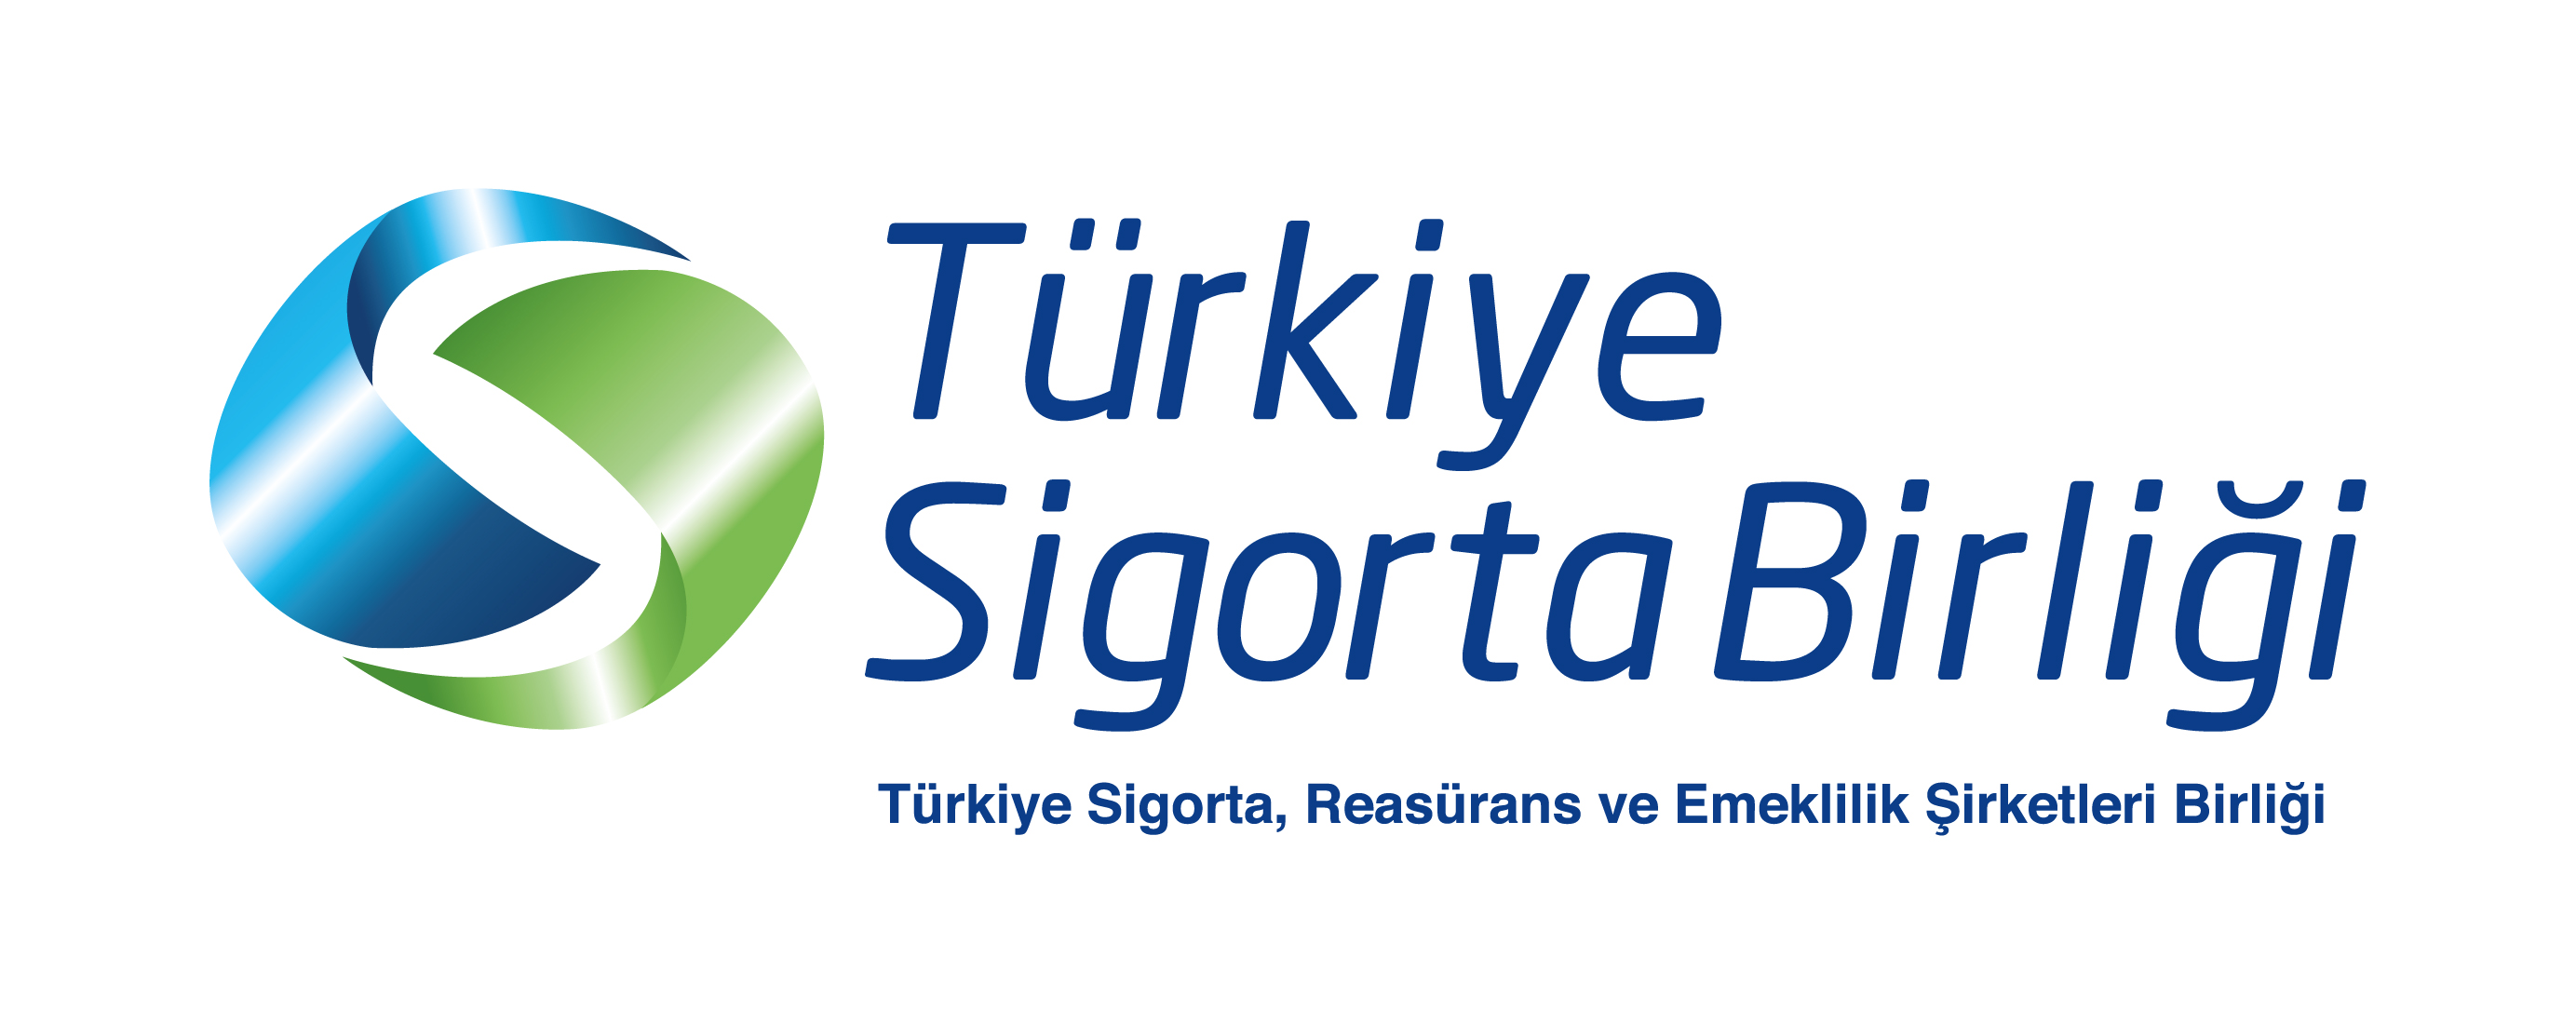 Türkiye Sigorta Birliği:   “İki Şirketin Sigortalılarının Haklarının   Korunması İçin Her Türlü Tedbiri Aldık”